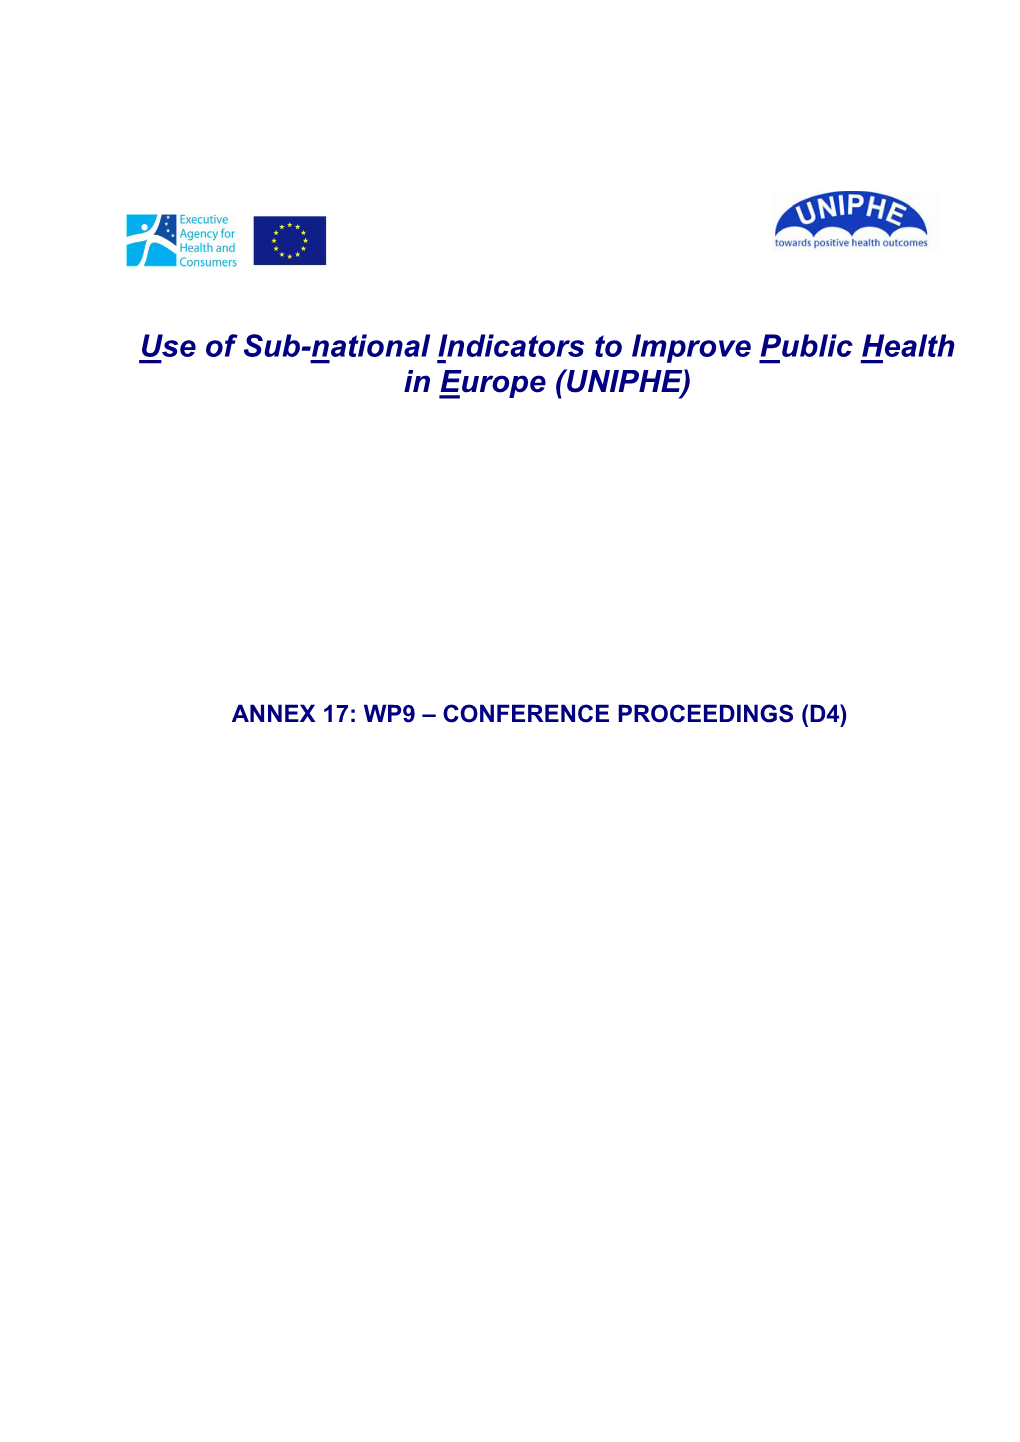 Use of Sub-National Indicators to Improve Public Health in Europe (UNIPHE)